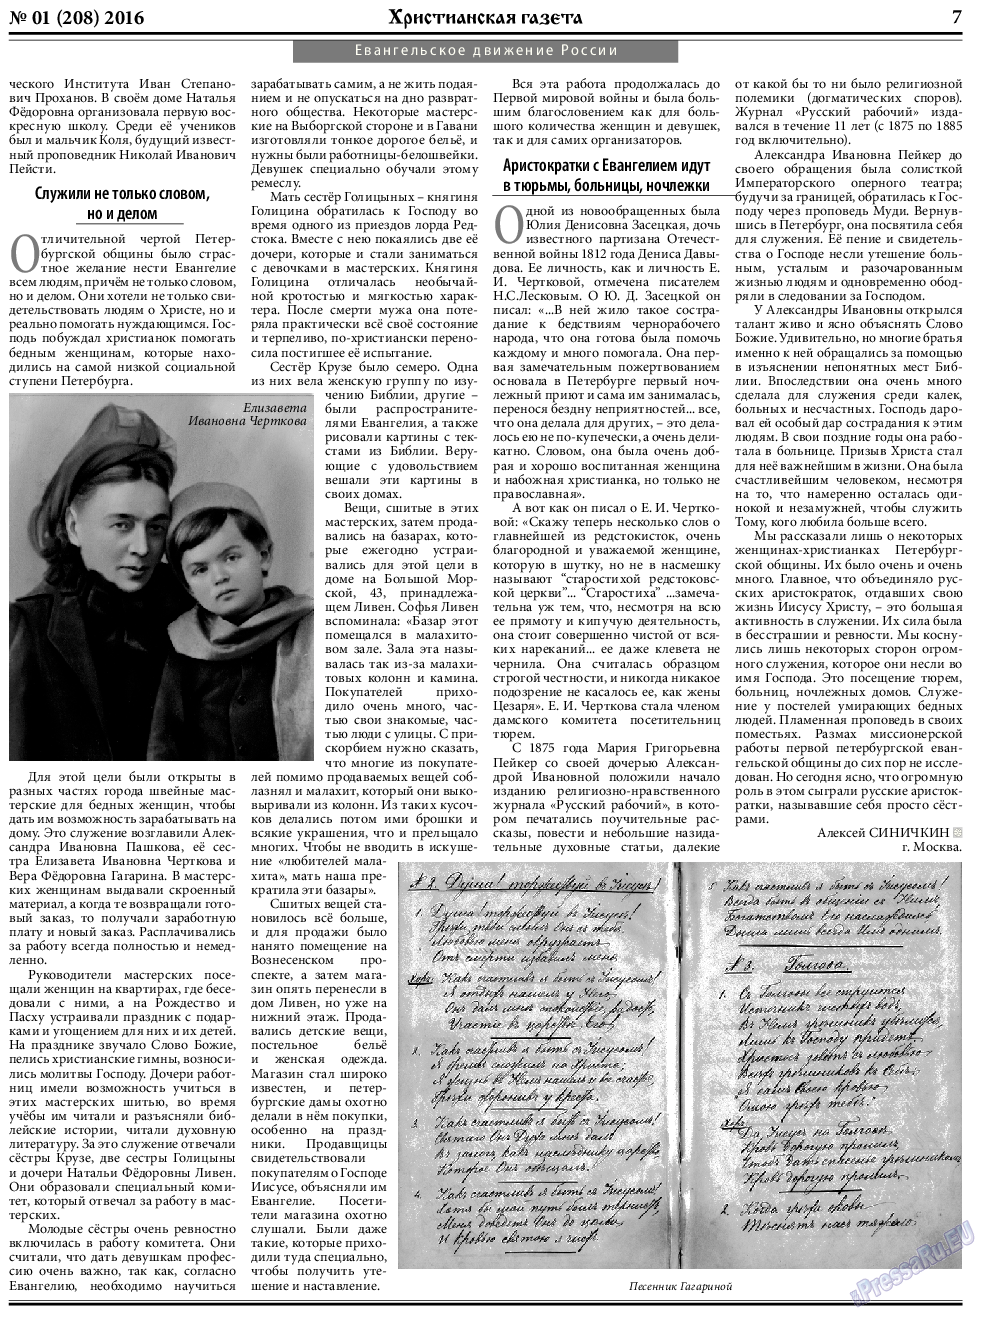 Христианская газета, газета. 2016 №1 стр.7